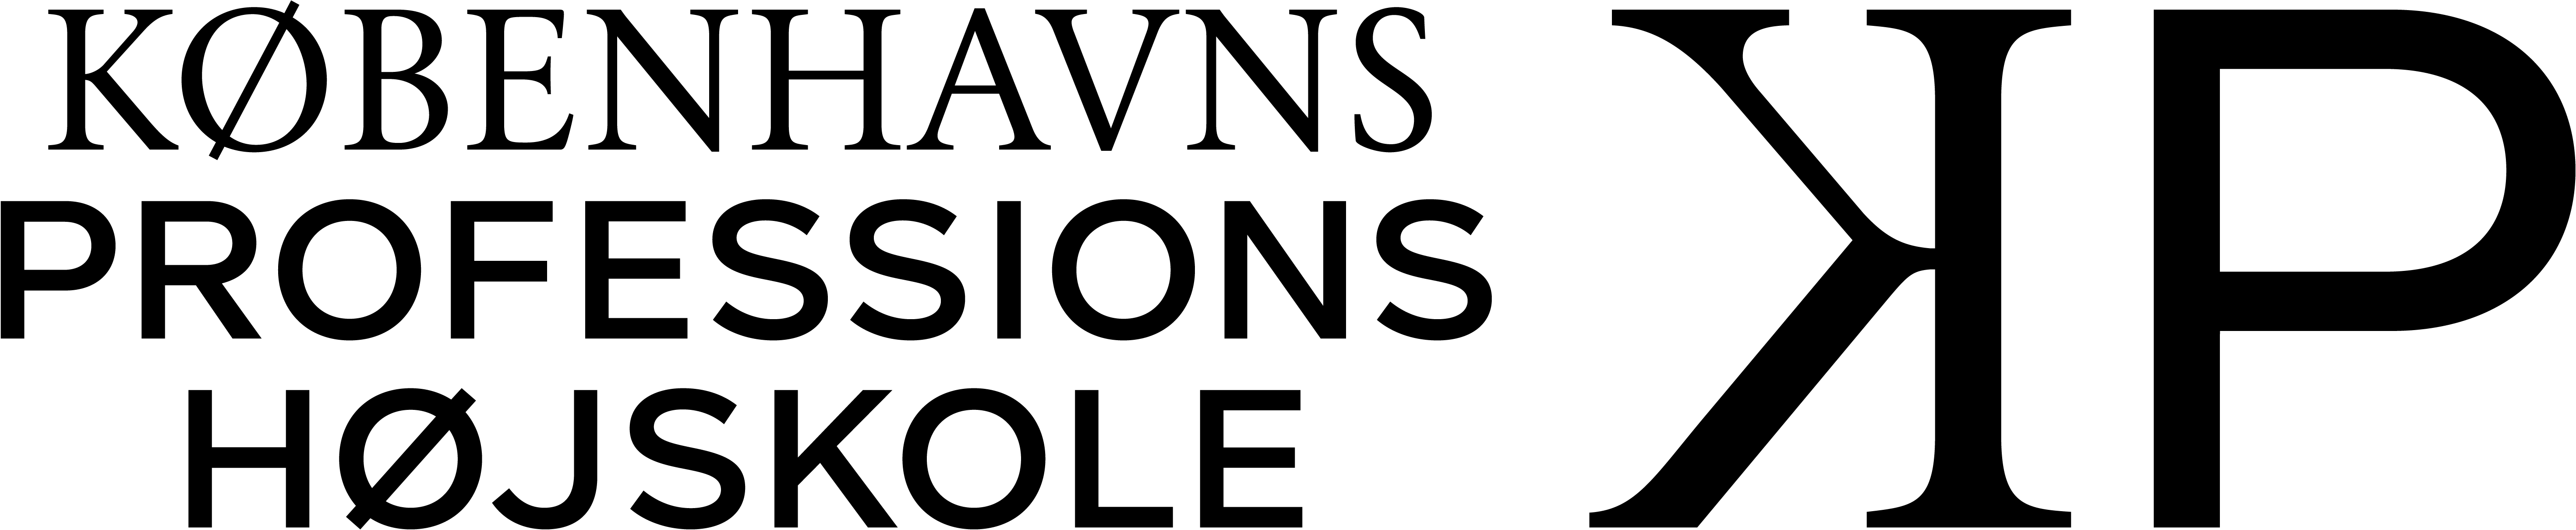 Logo for Københavns Professionshøjskole